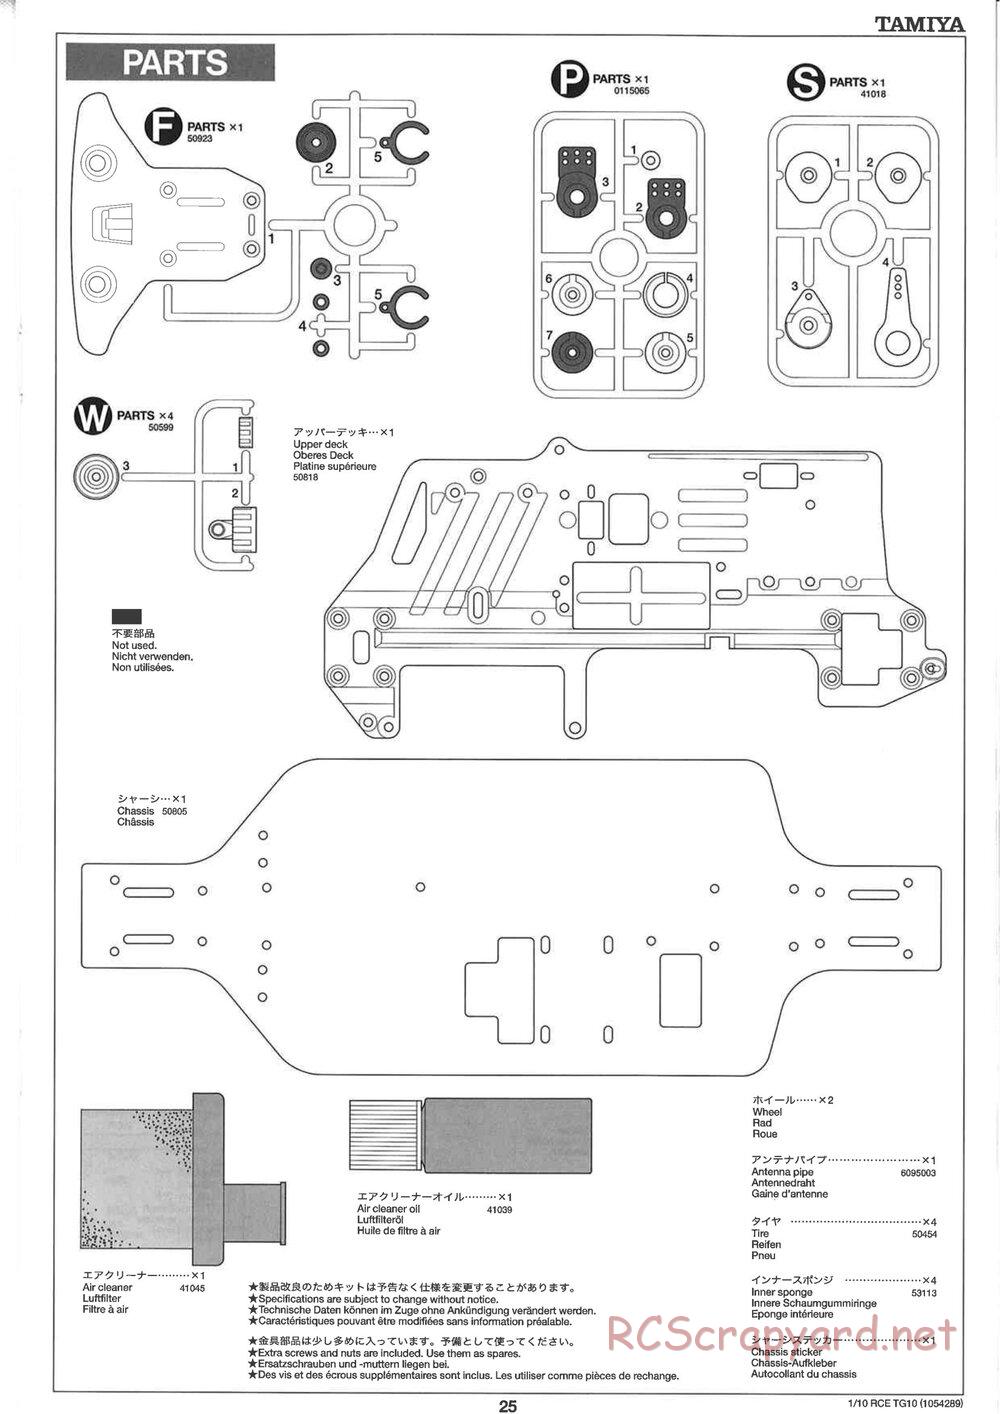 Tamiya - TG10 Mk.1 Chassis - Manual - Page 25